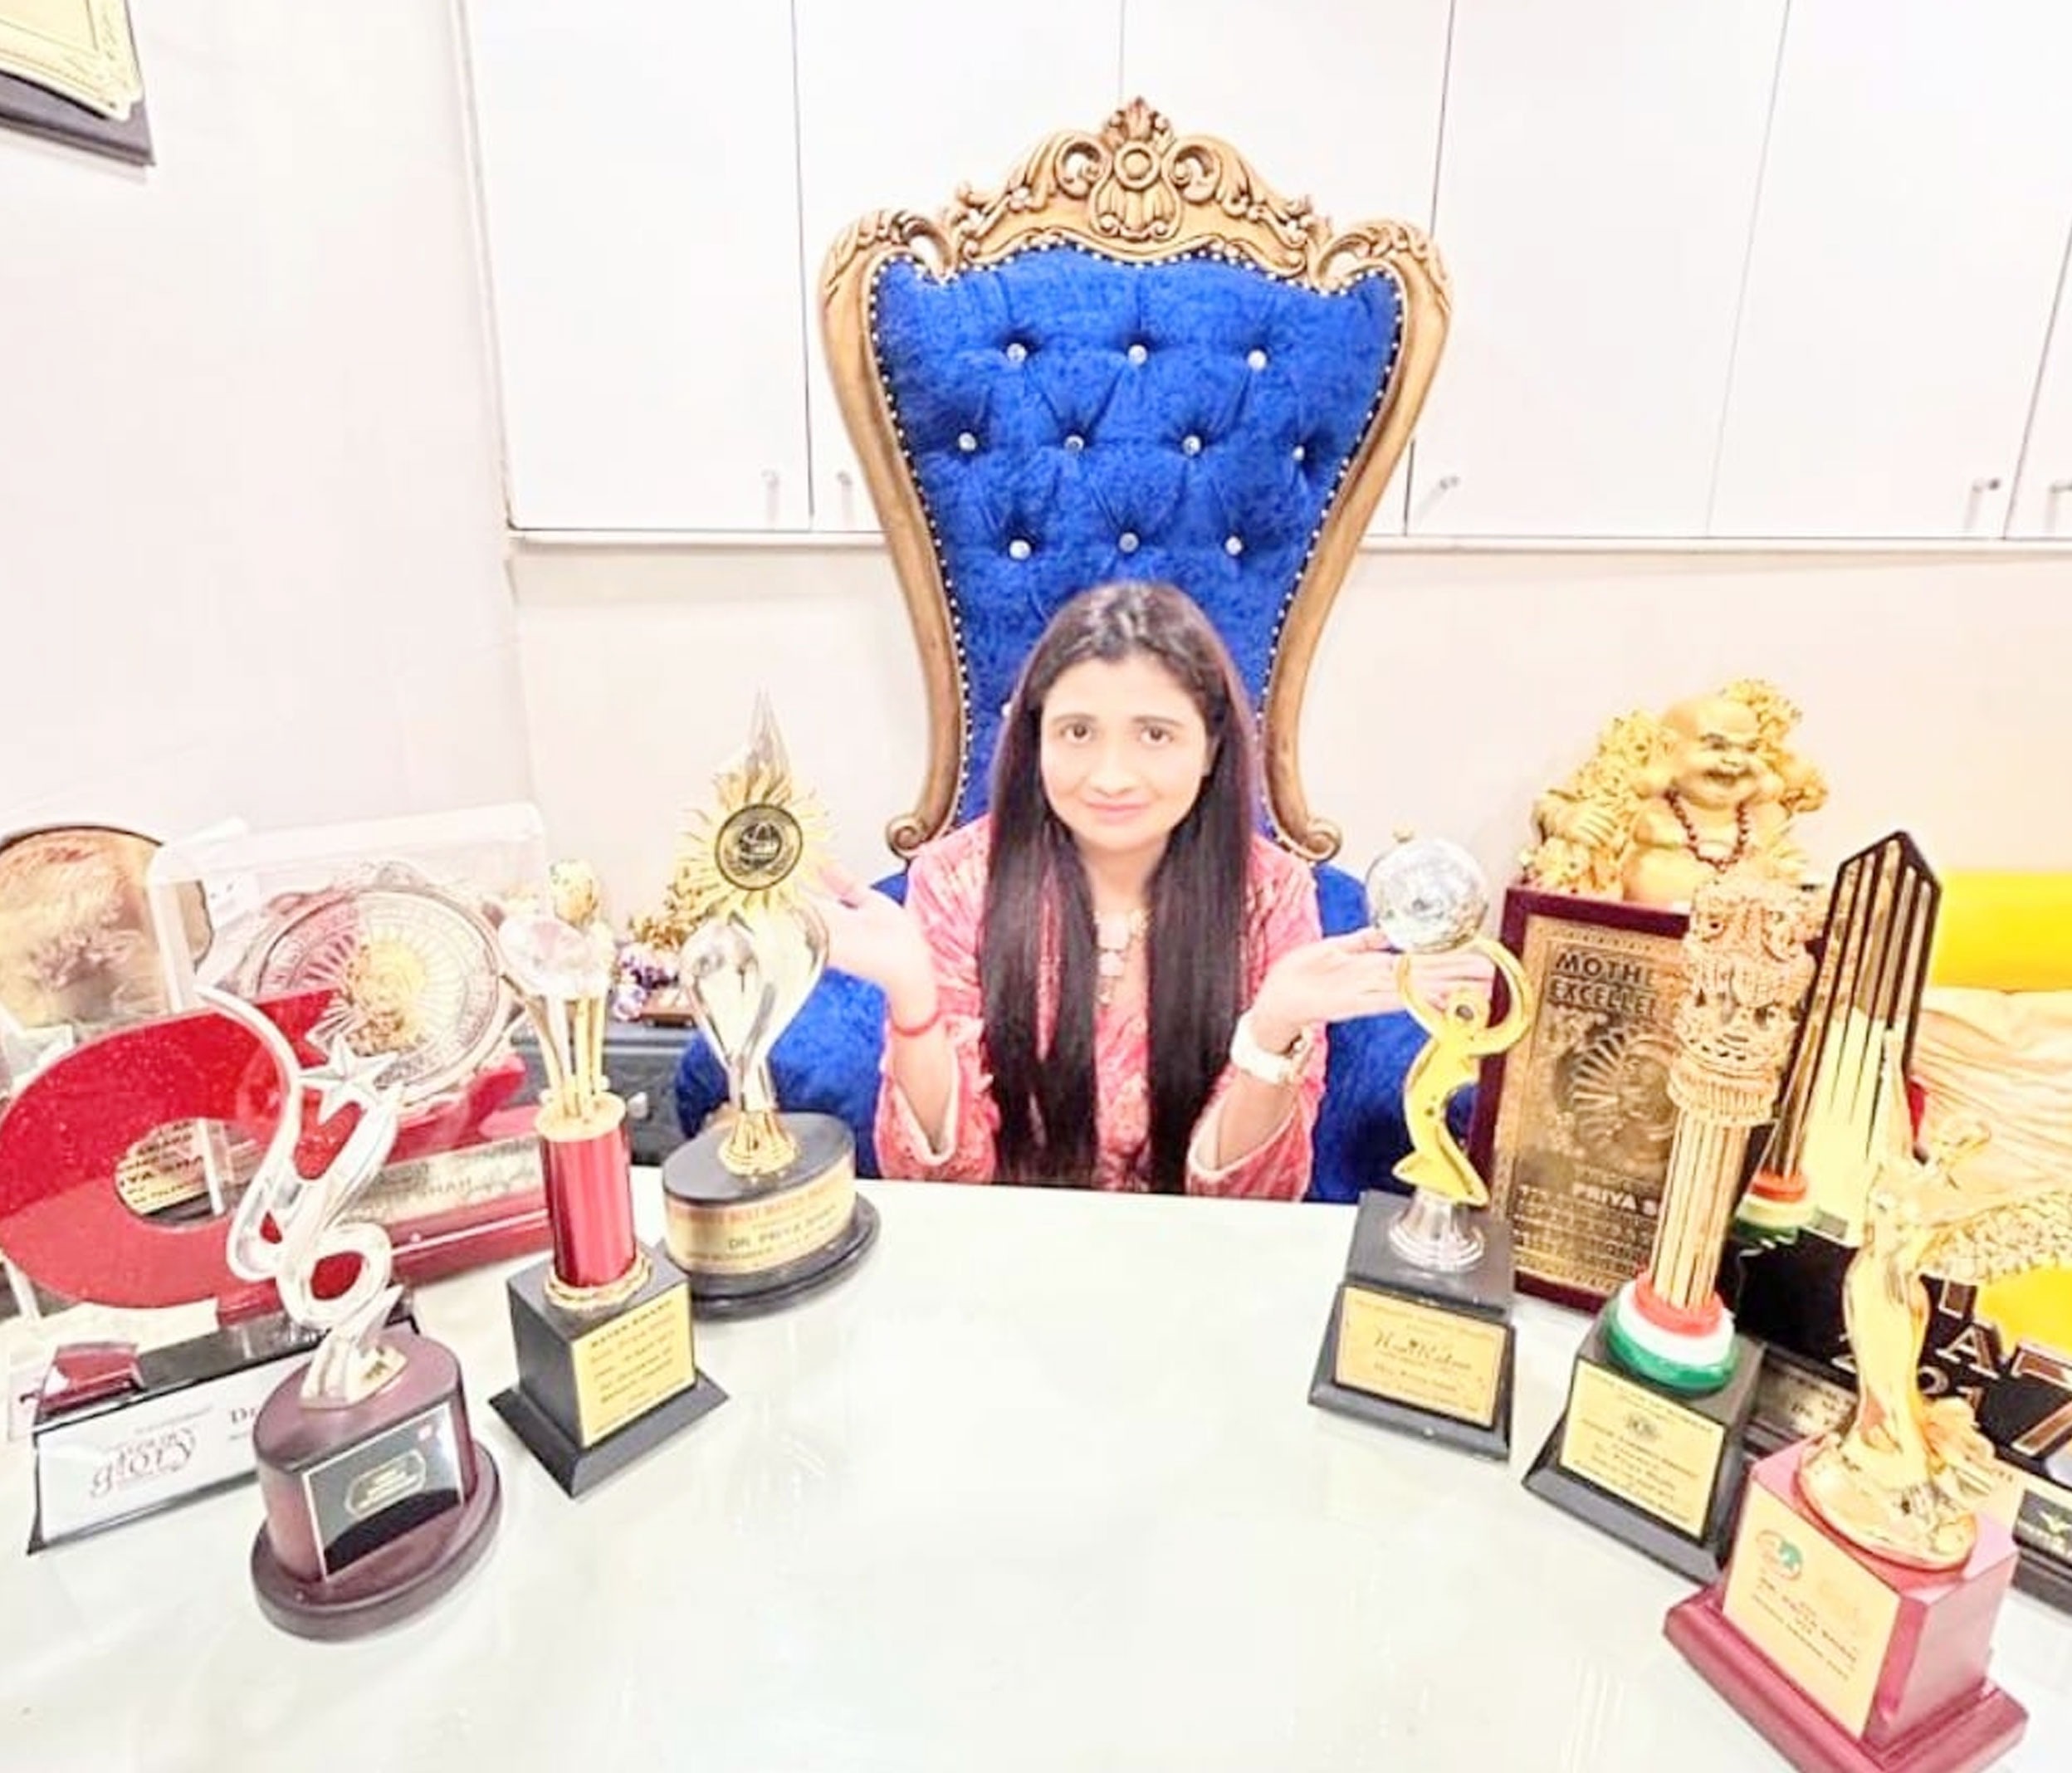 Priya received awards